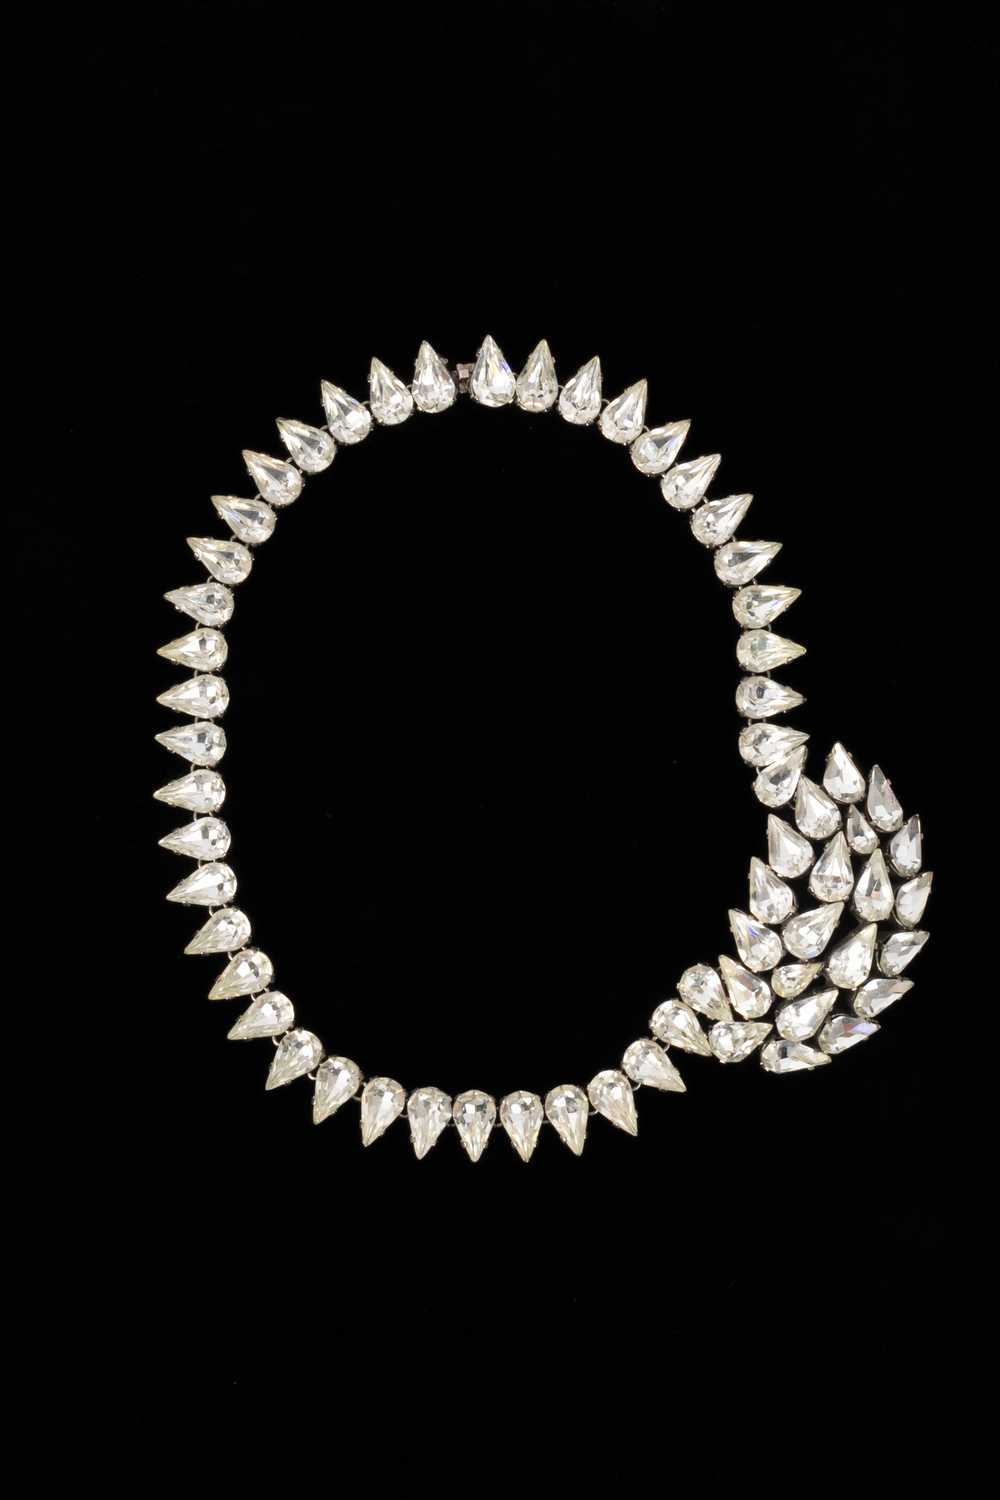 Viintage rhinestoned necklace - image 2